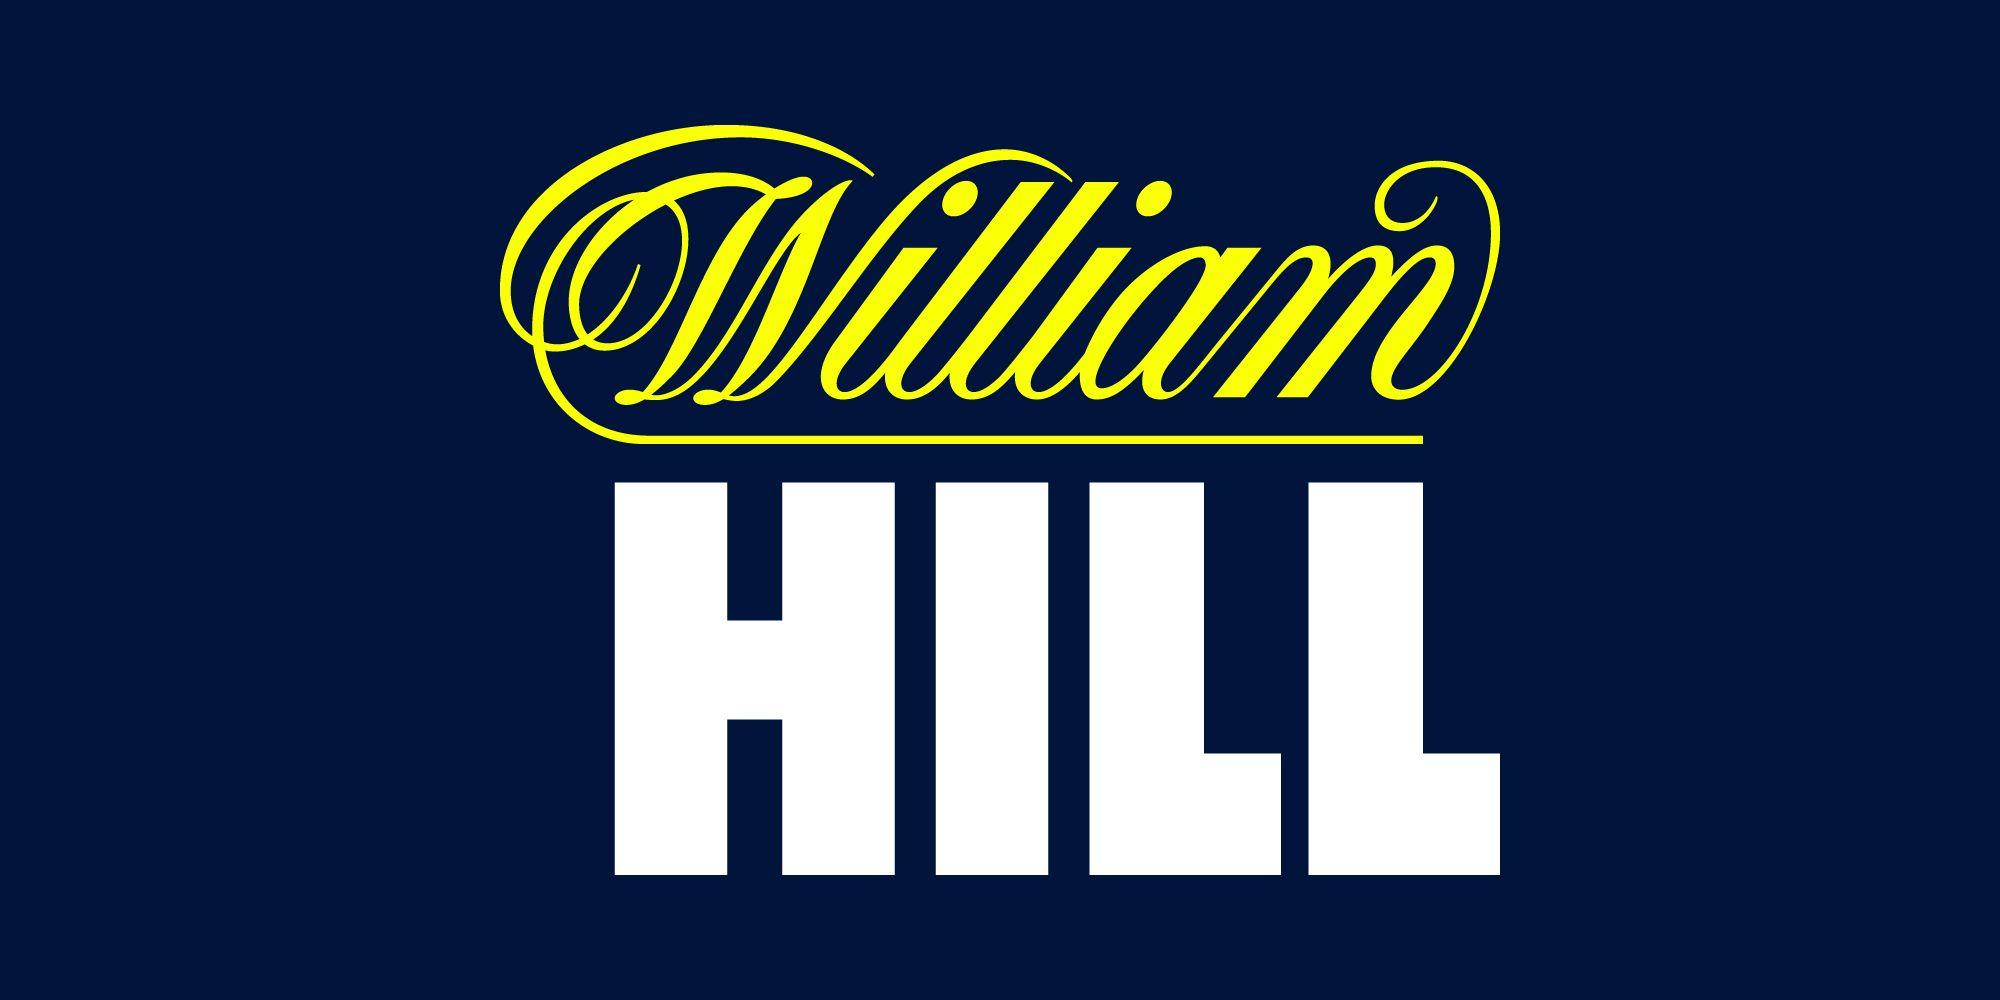 William Logo - William Hill Plc: Image library - Media